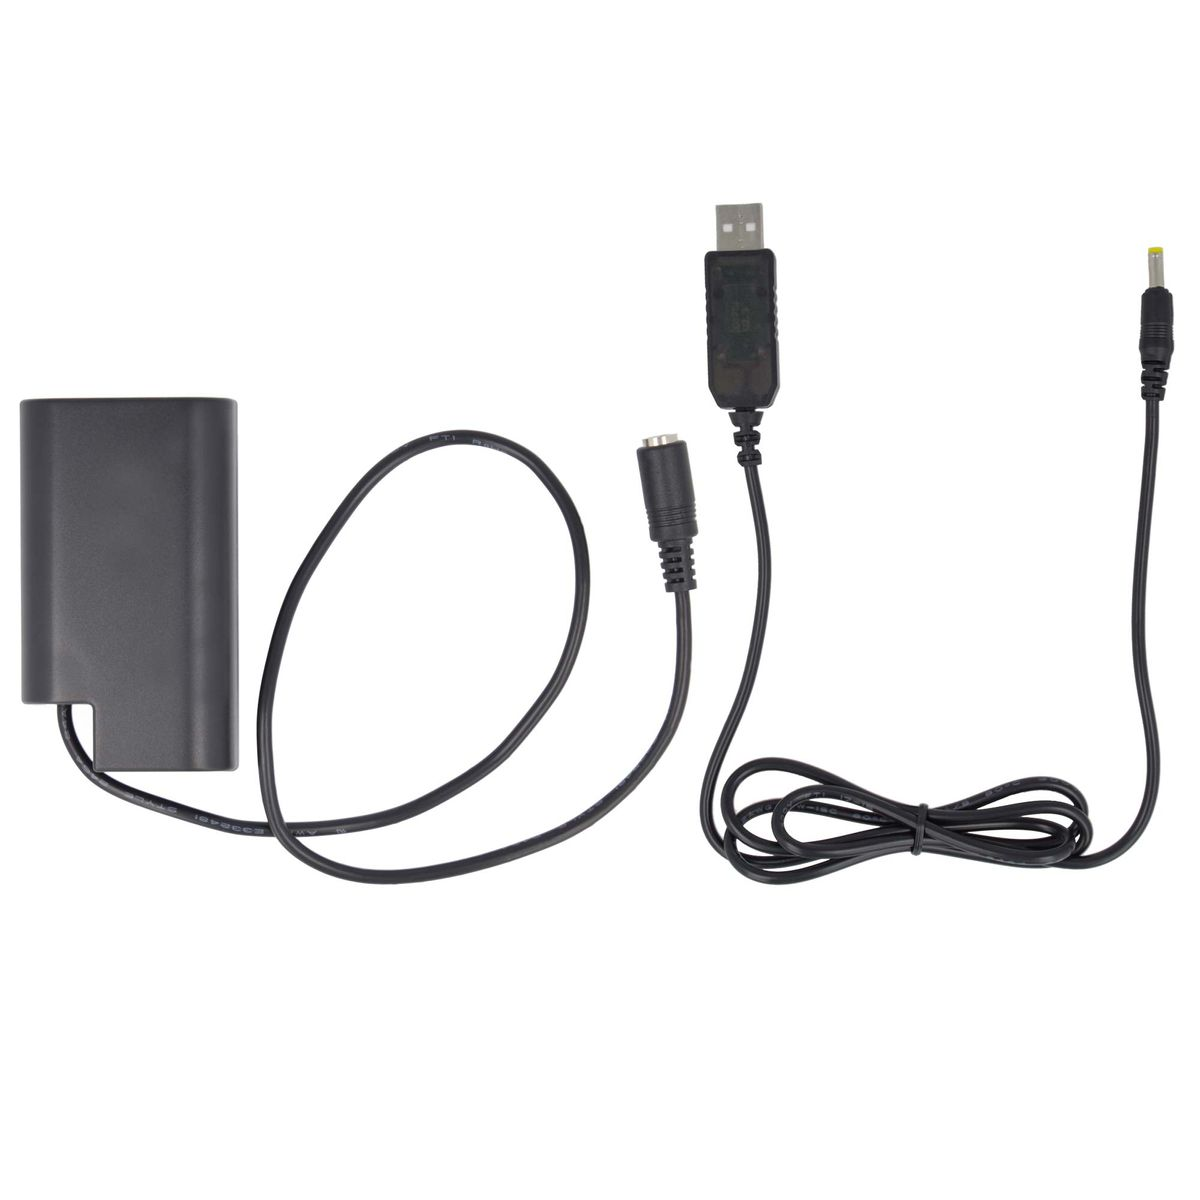 AKKU-KING USB Adapter + Kuppler DCC16 kompatibel Panasonic, Panasonic mit Angabe Ladegerät keine